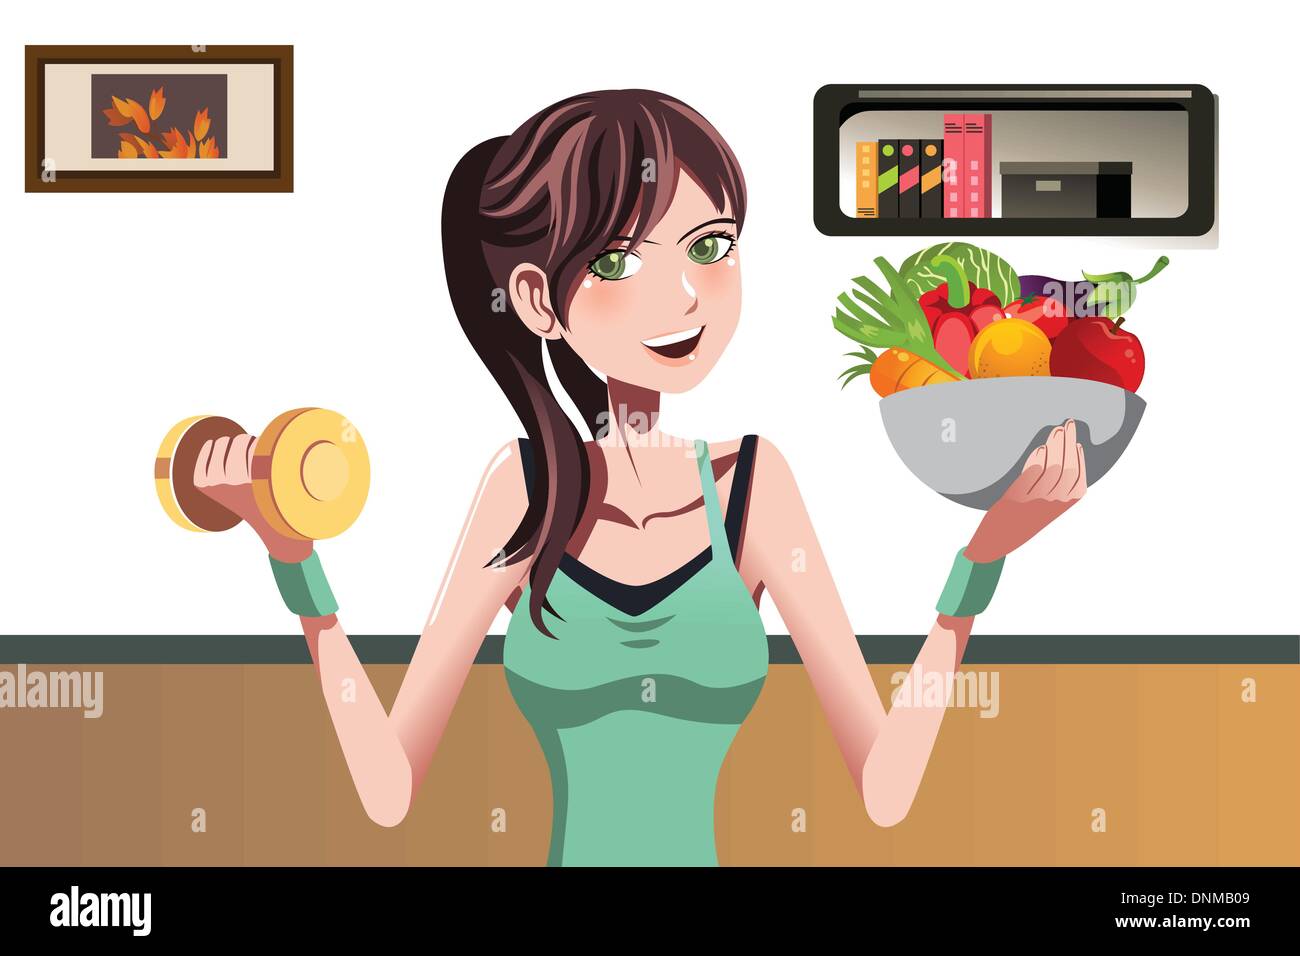 Eine Vektor-Illustration eines schönen Mädchens halten eine Kurzhantel und eine Schüssel mit Essen Stock Vektor